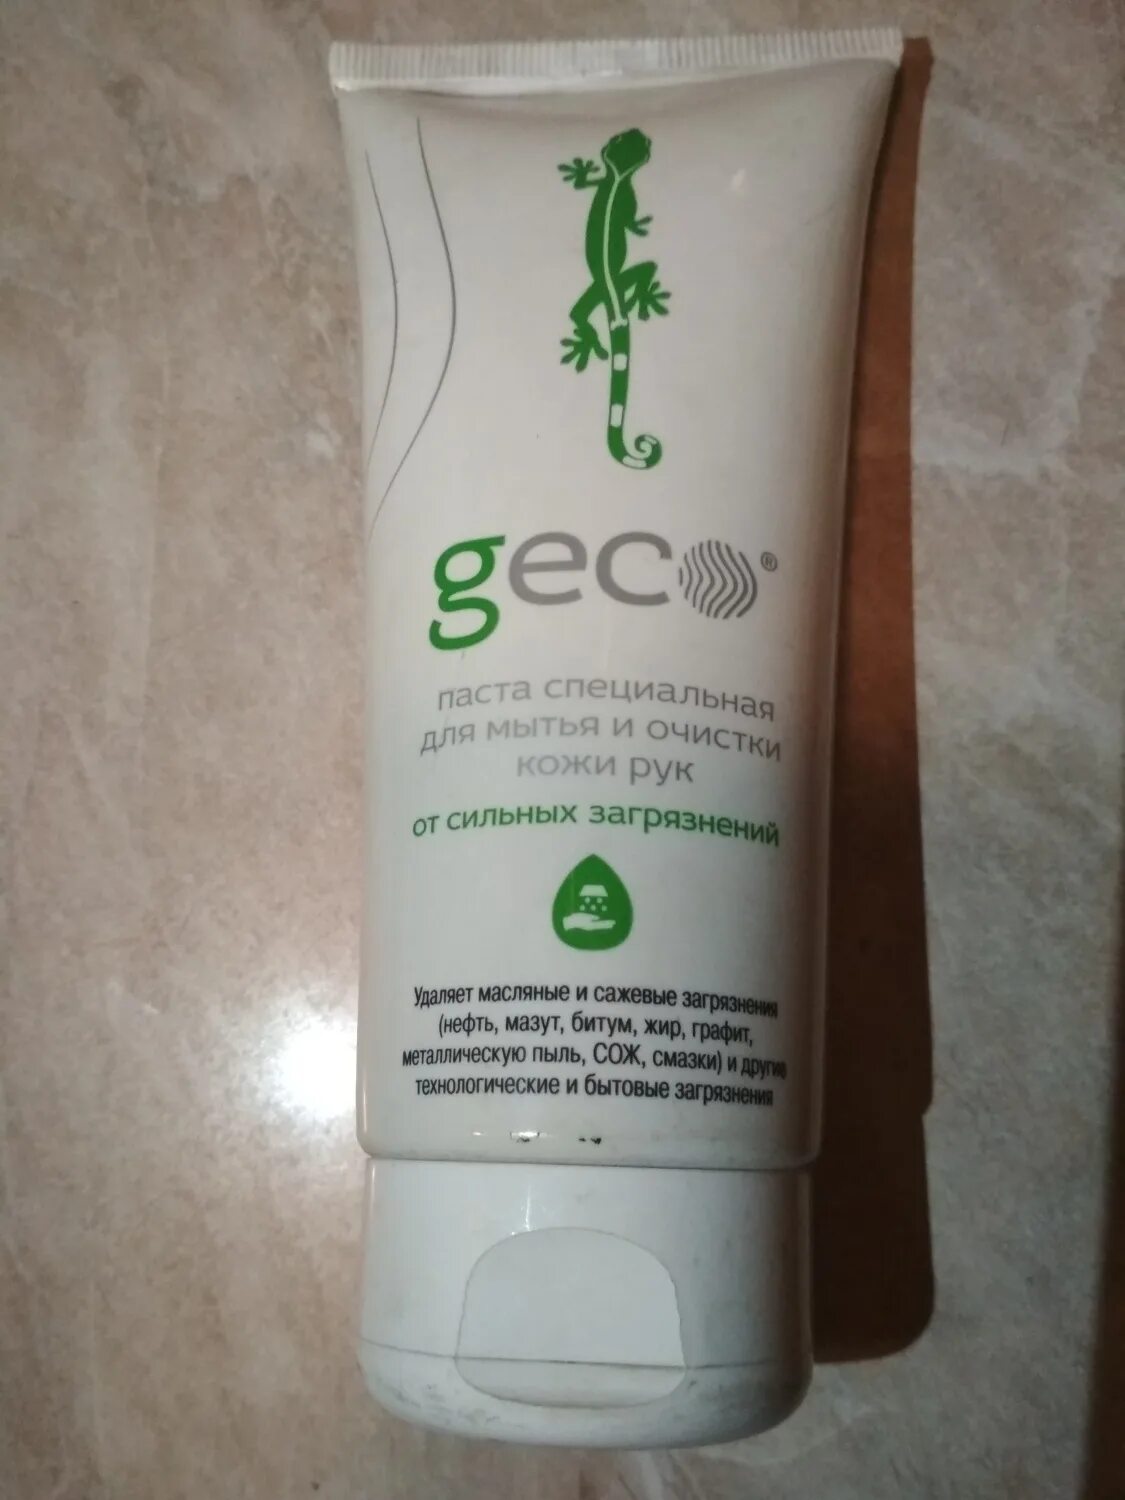 Очистка рук от сильных загрязнений. Geco паста специальная. Geco паста специальная для очистки кожи рук. Очищающая паста Геко. Паста для очистки рук от сильных загрязнений Geco.